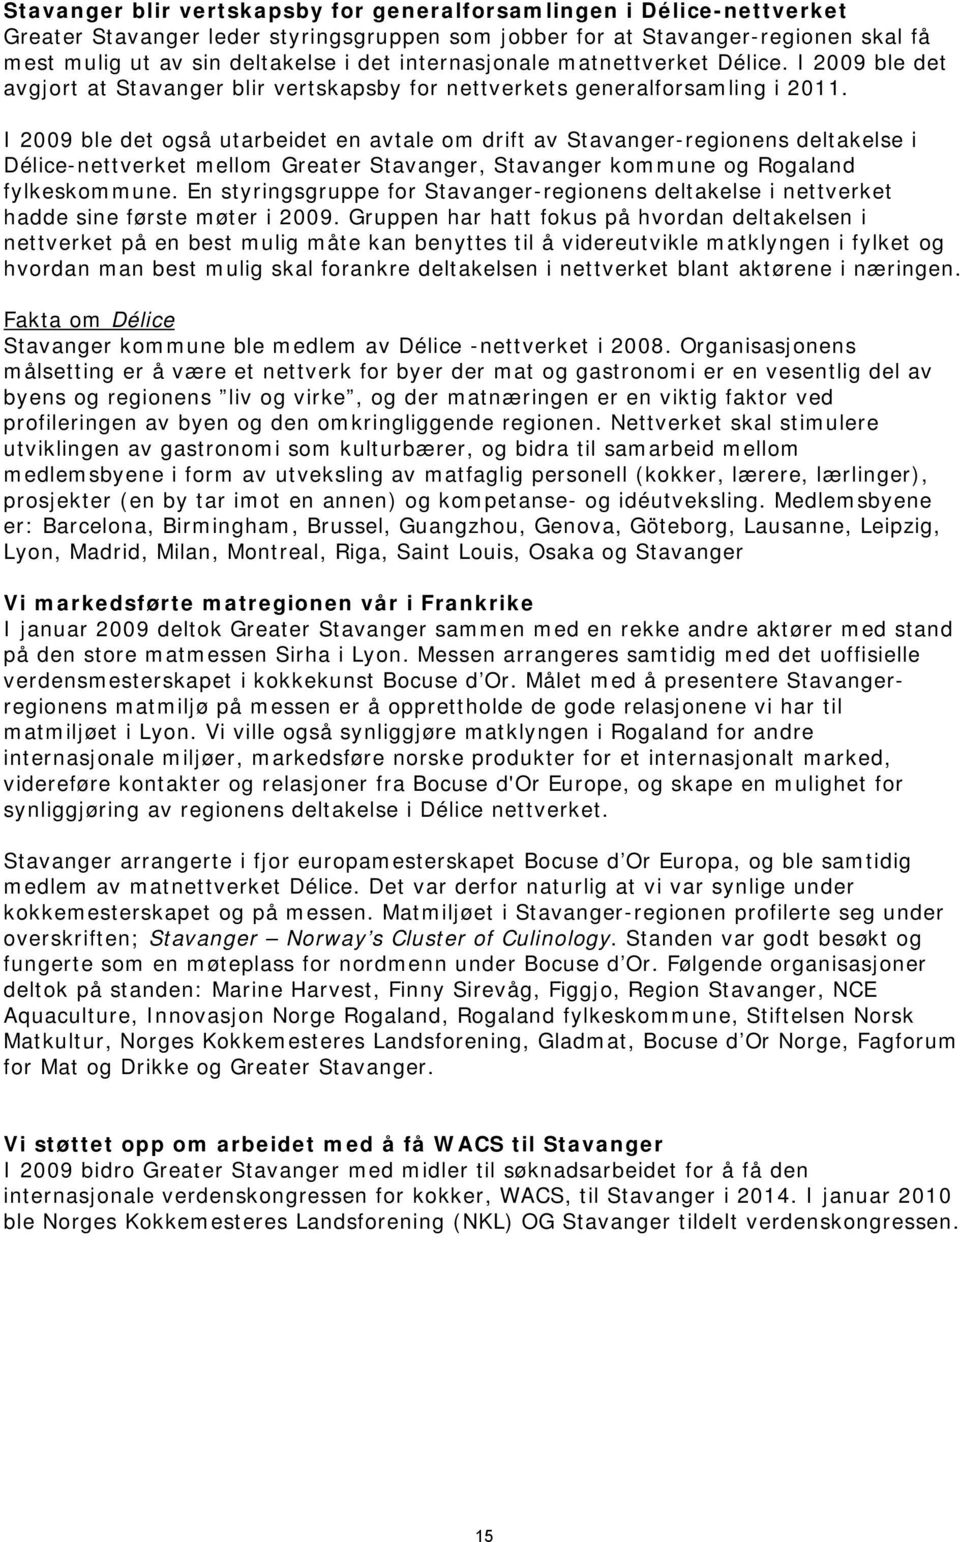 I 2009 ble det også utarbeidet en avtale om drift av Stavanger-regionens deltakelse i Délice-nettverket mellom Greater Stavanger, Stavanger kommune og Rogaland fylkeskommune.